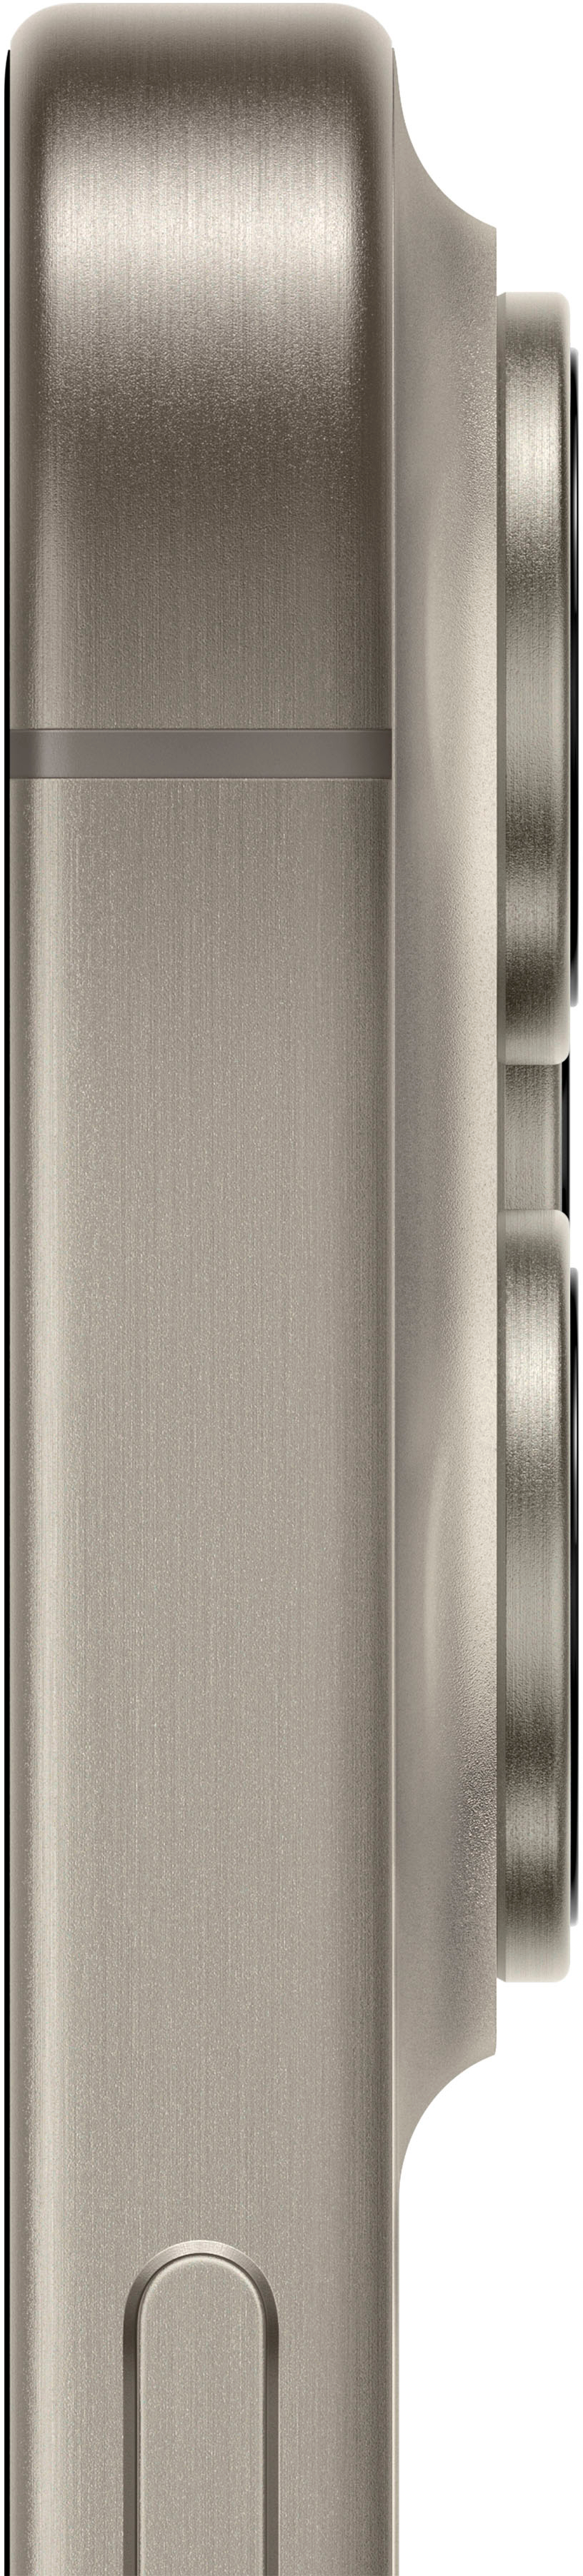 Smartphone apple iphone 15 pro 512gb/ 6.1'/ 5g/ titanio natural